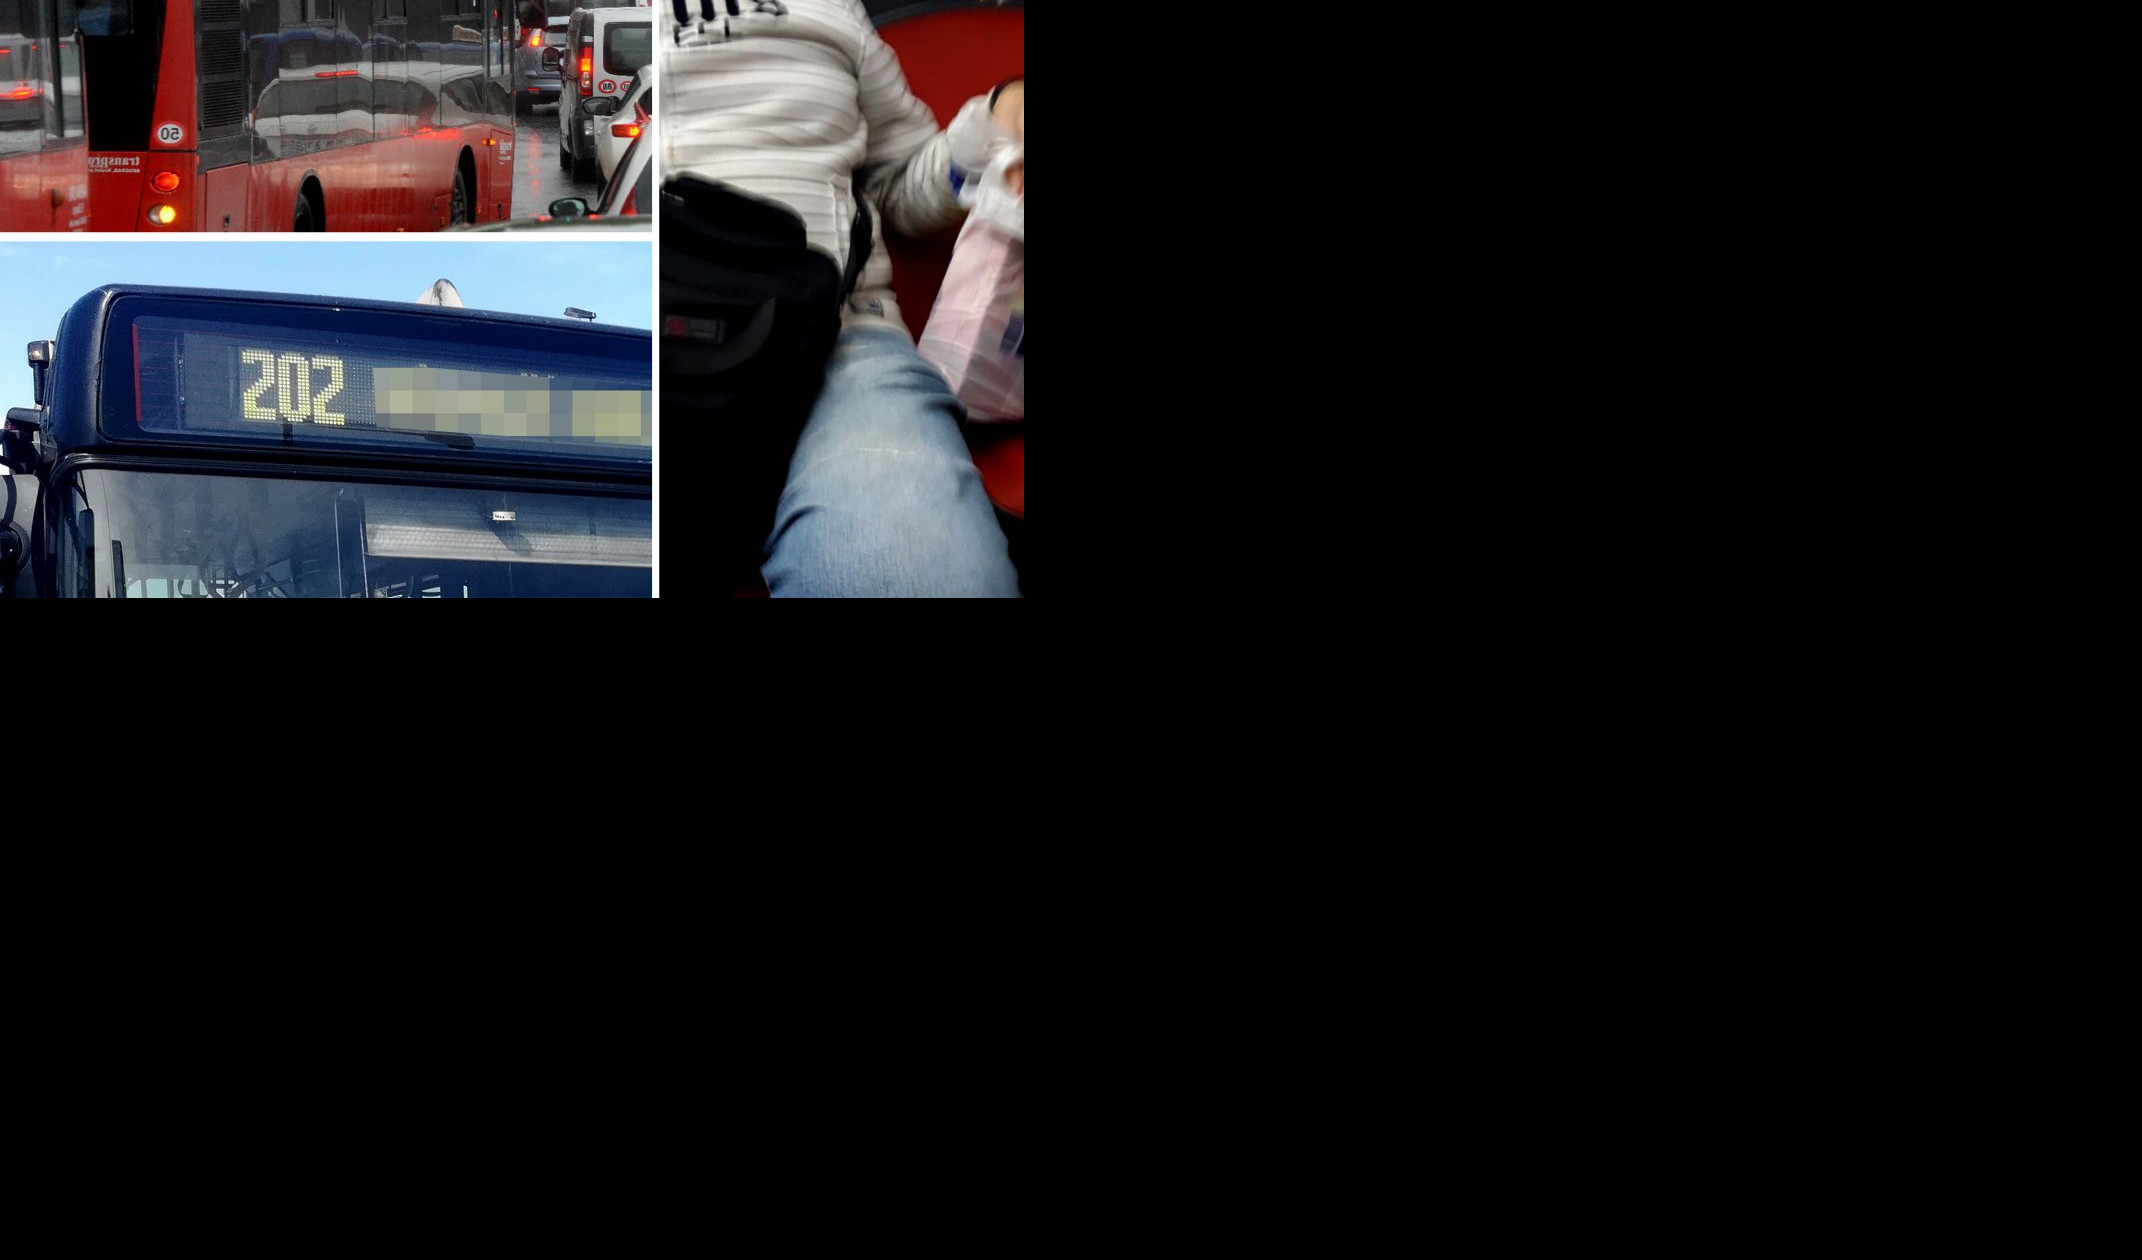 SRAMOTA! NAVIĐENA BAHATOST U AUTOBUSU GSP-a NA LINIJI 202 - Starica stoji, on drži kese na sedištu! (Foto)